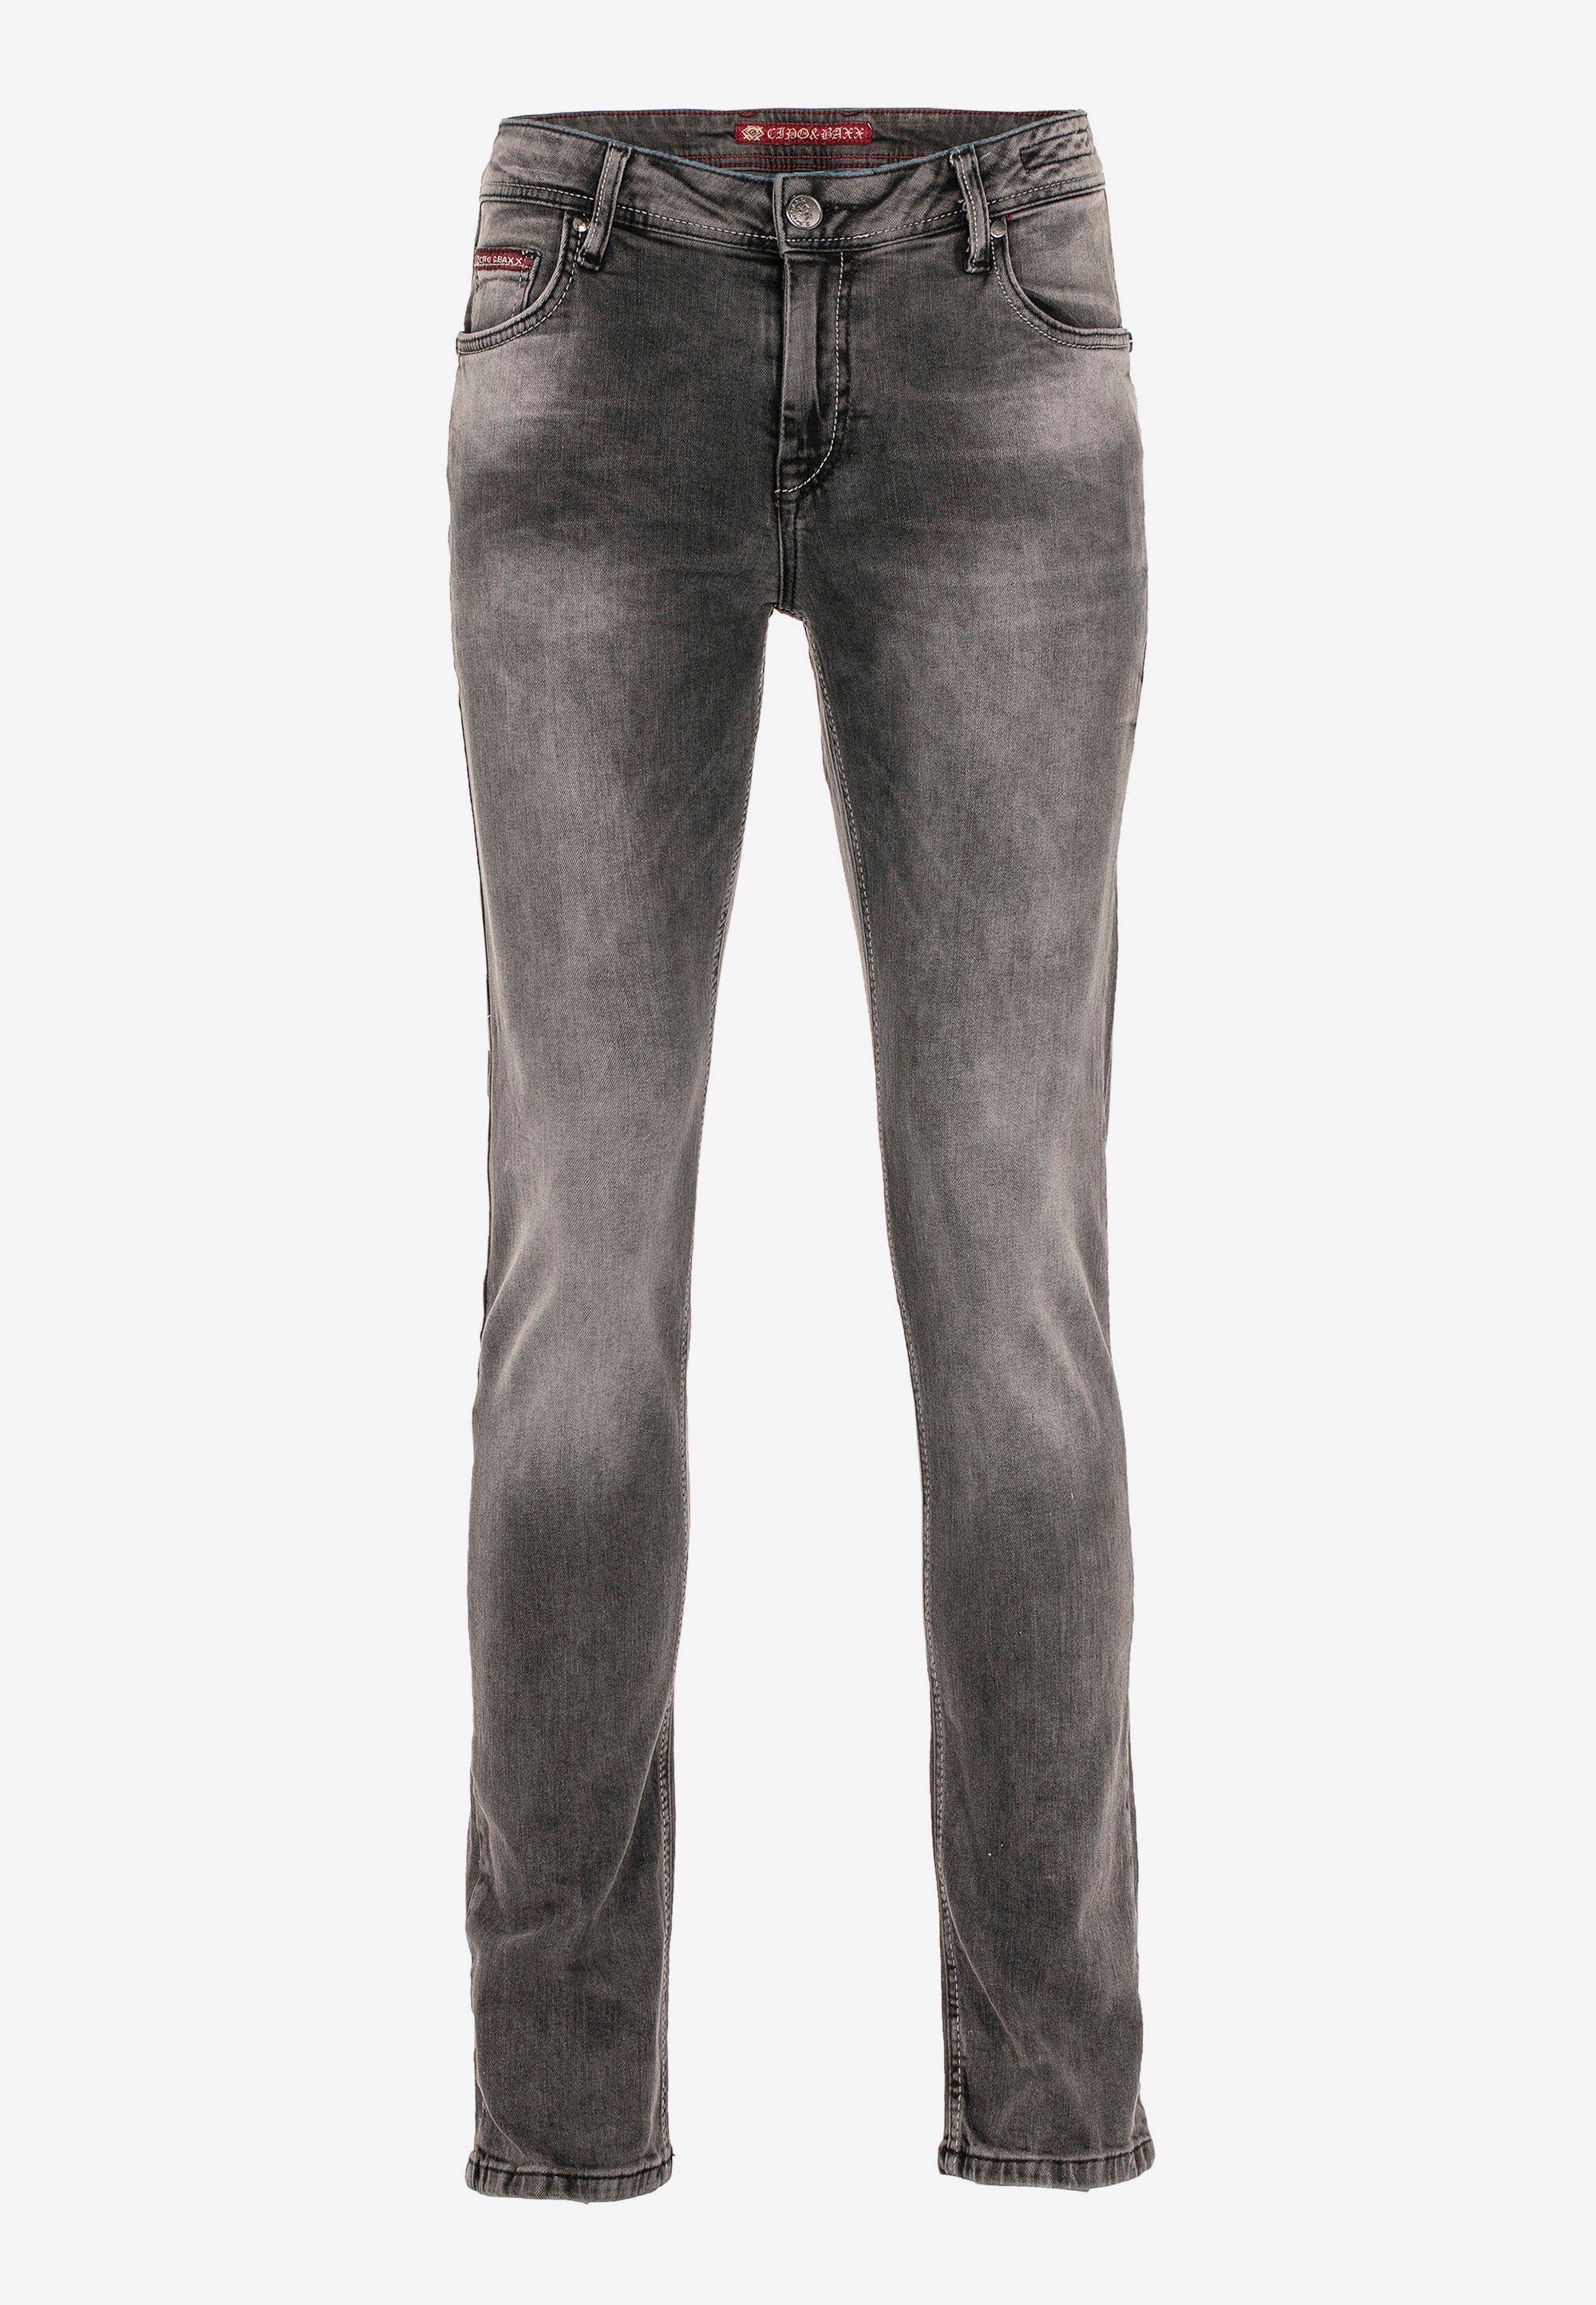 Cipo & Baxx Jeans Bequeme Fit schwarz Passform optimaler in Slim-Straight mit